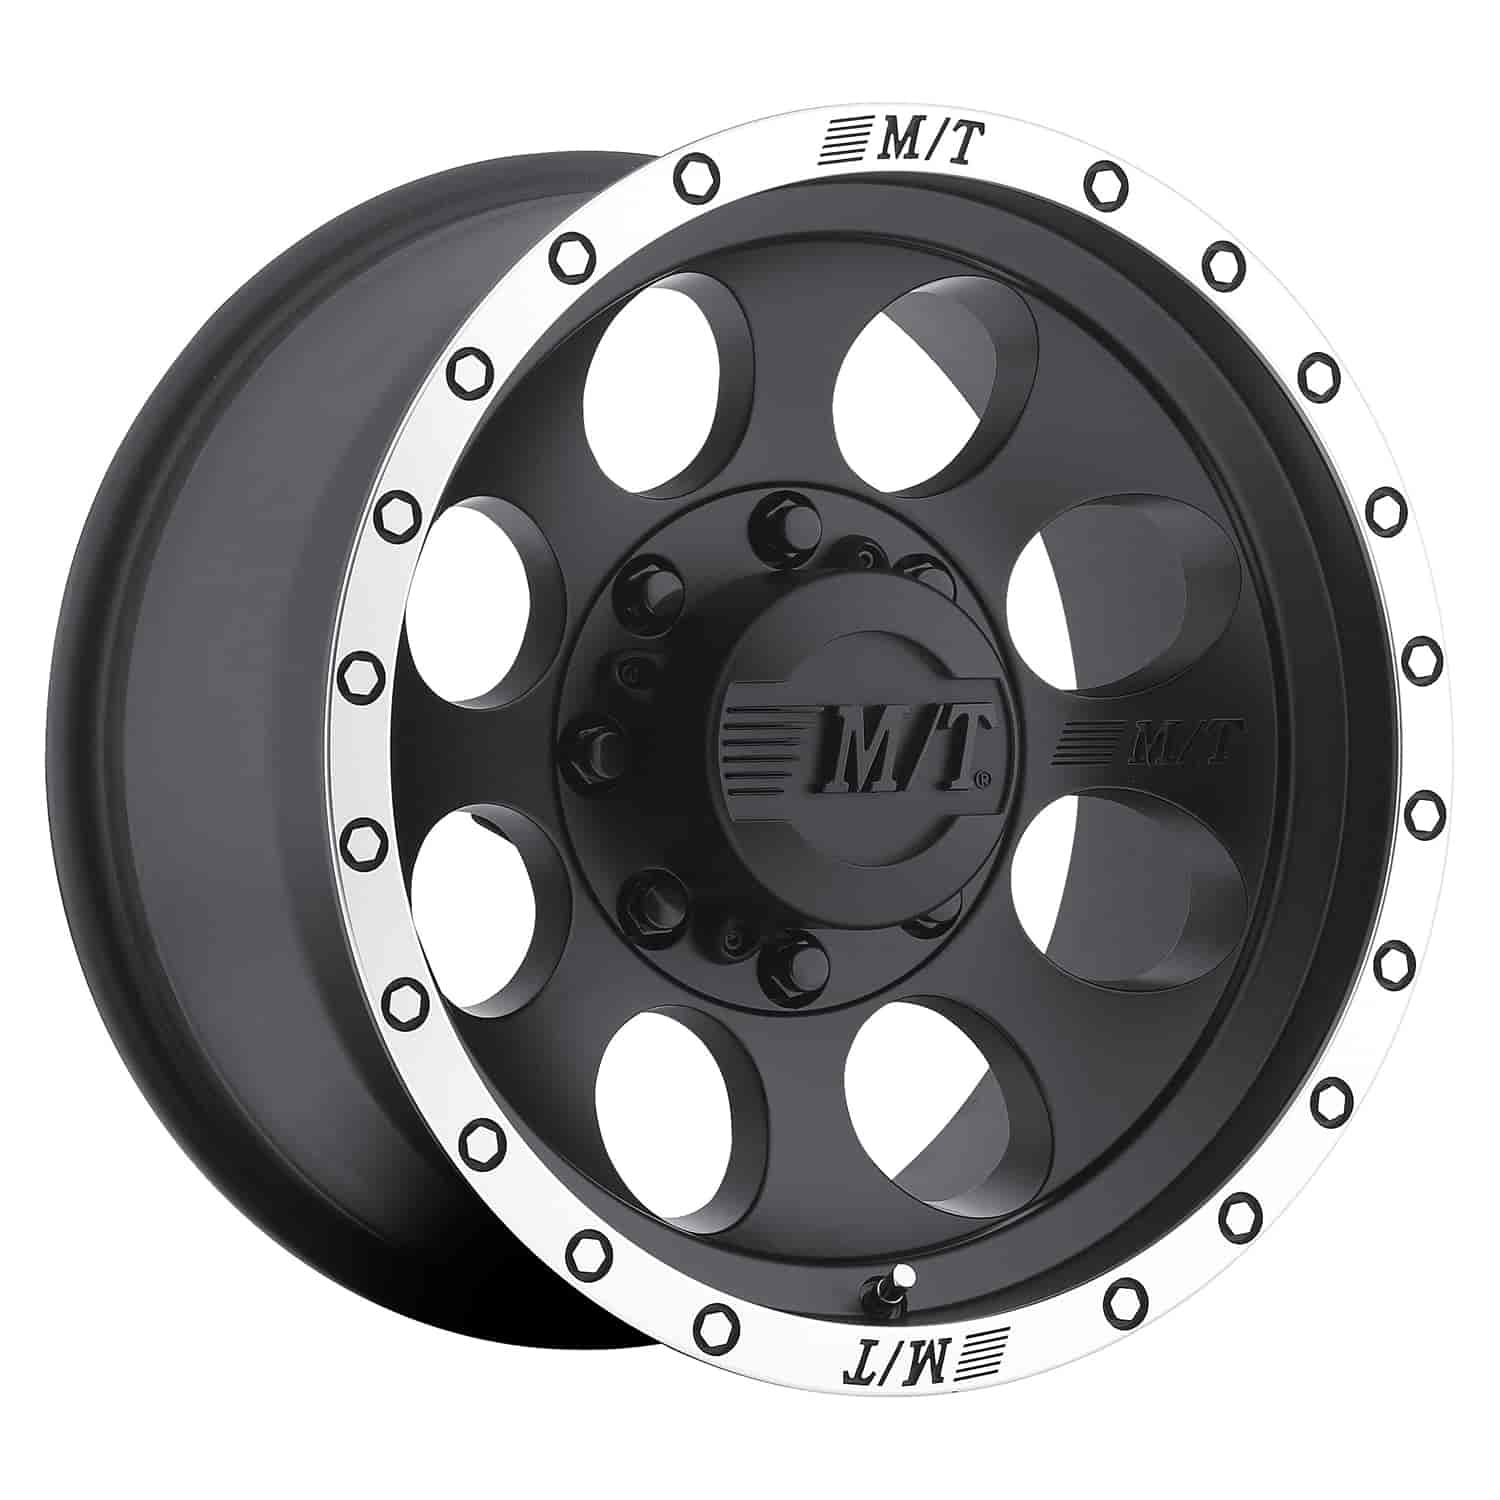 Classic Baja Lock Wheel Size: 16" x 8" Bolt Pattern: 8 x 6-1/2" Rear Spacing: 4" Offset: -12mm Max. Load: 3250 lbs